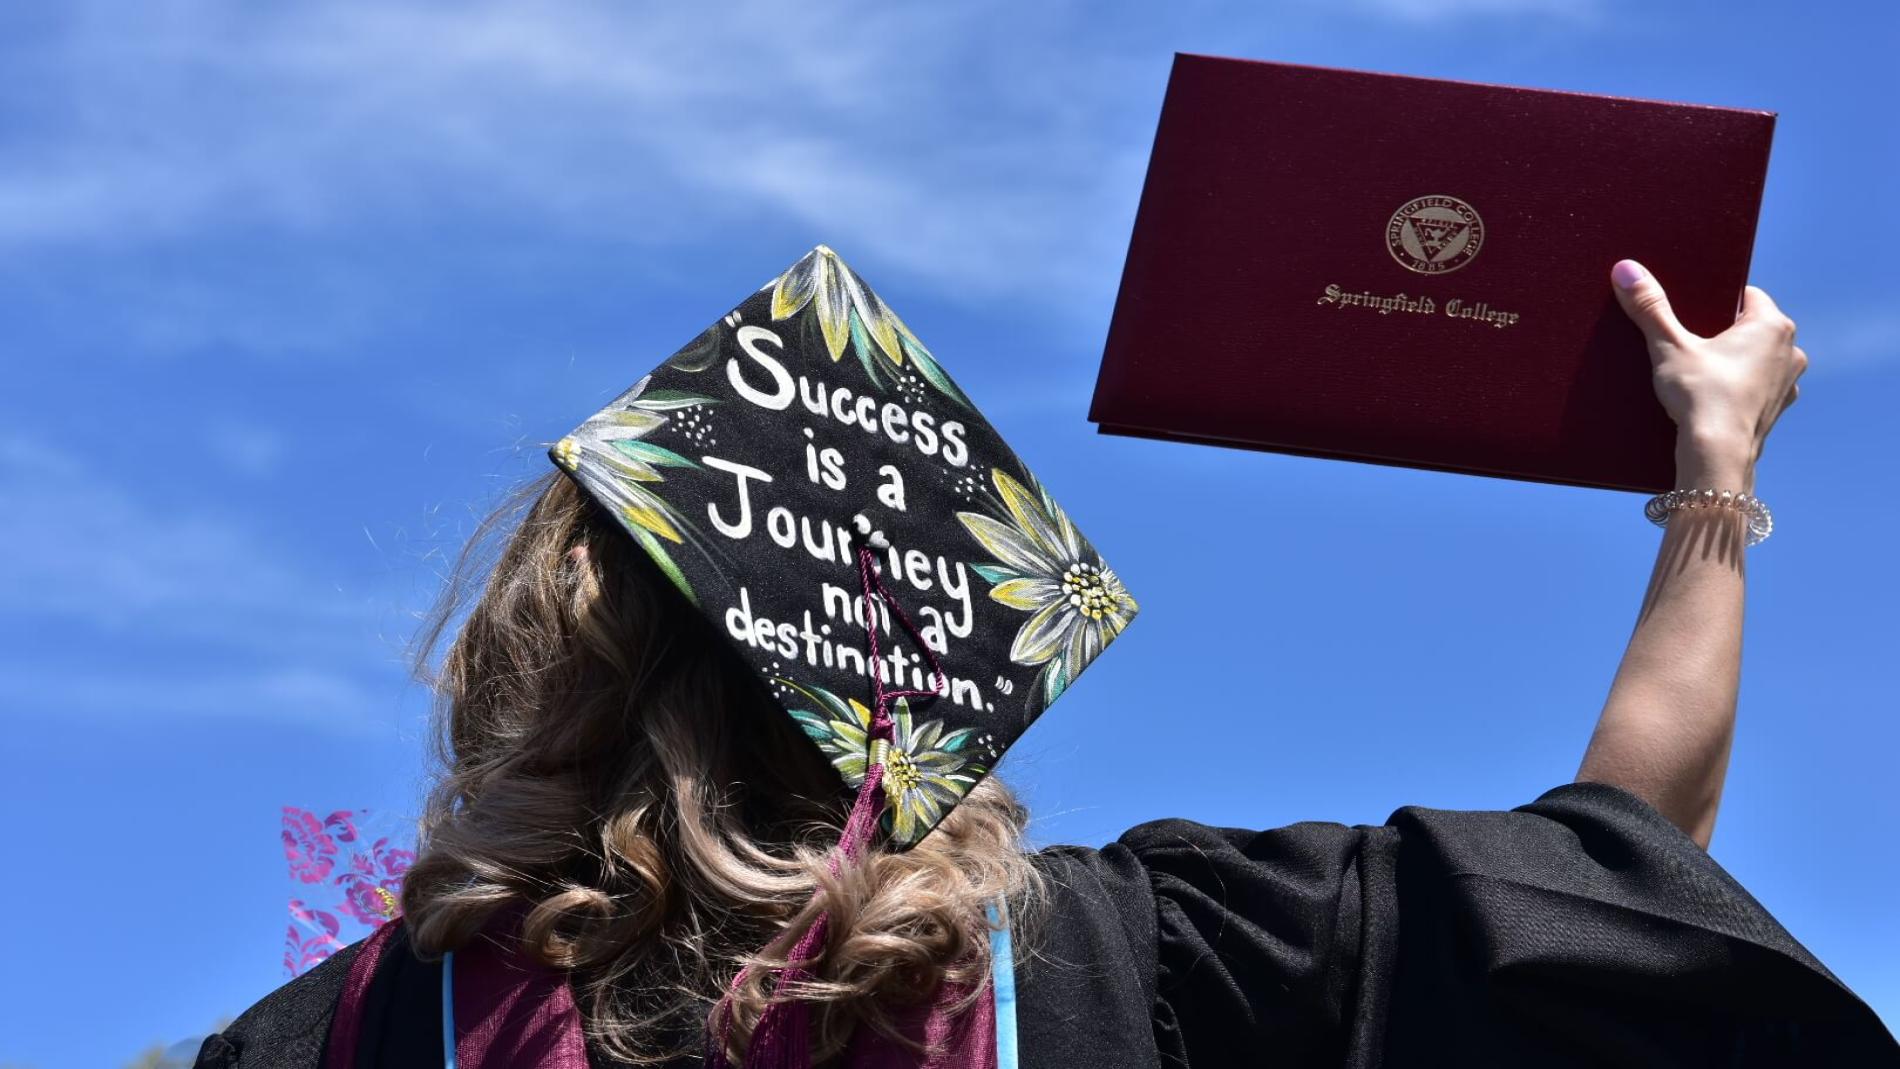 Graduation cap and degree